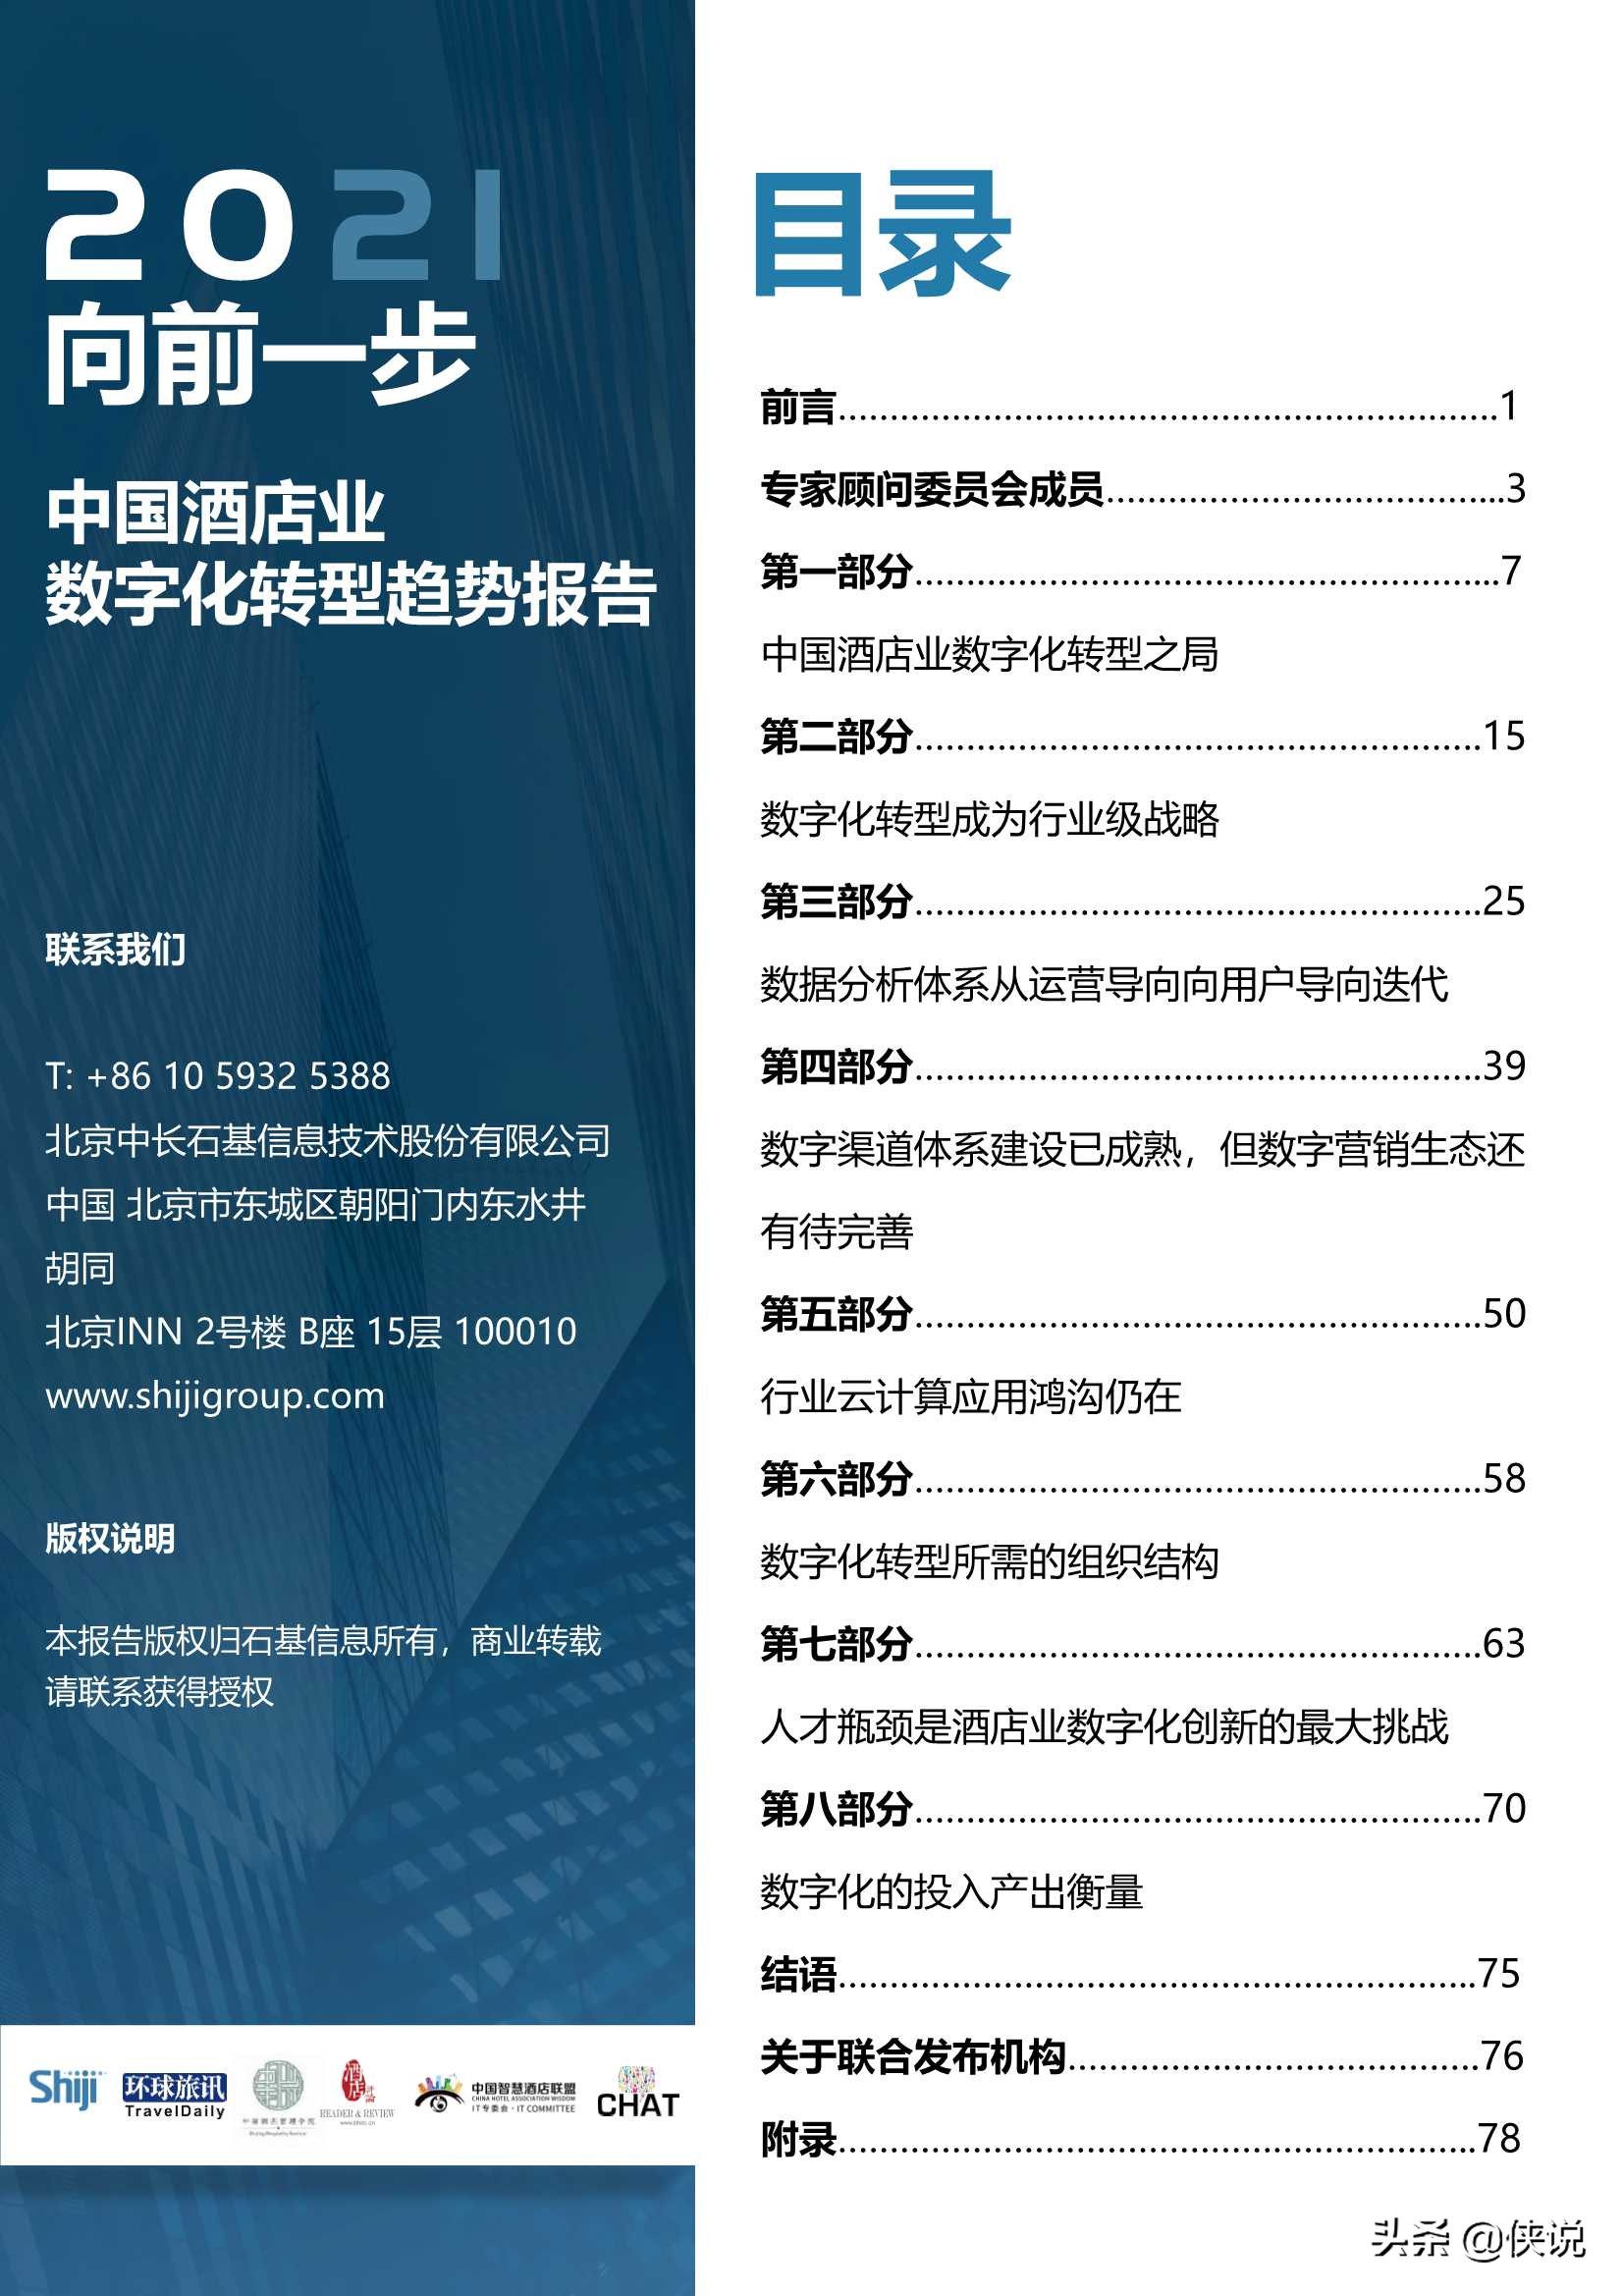 2021年中国酒店业数字化转型趋势报告